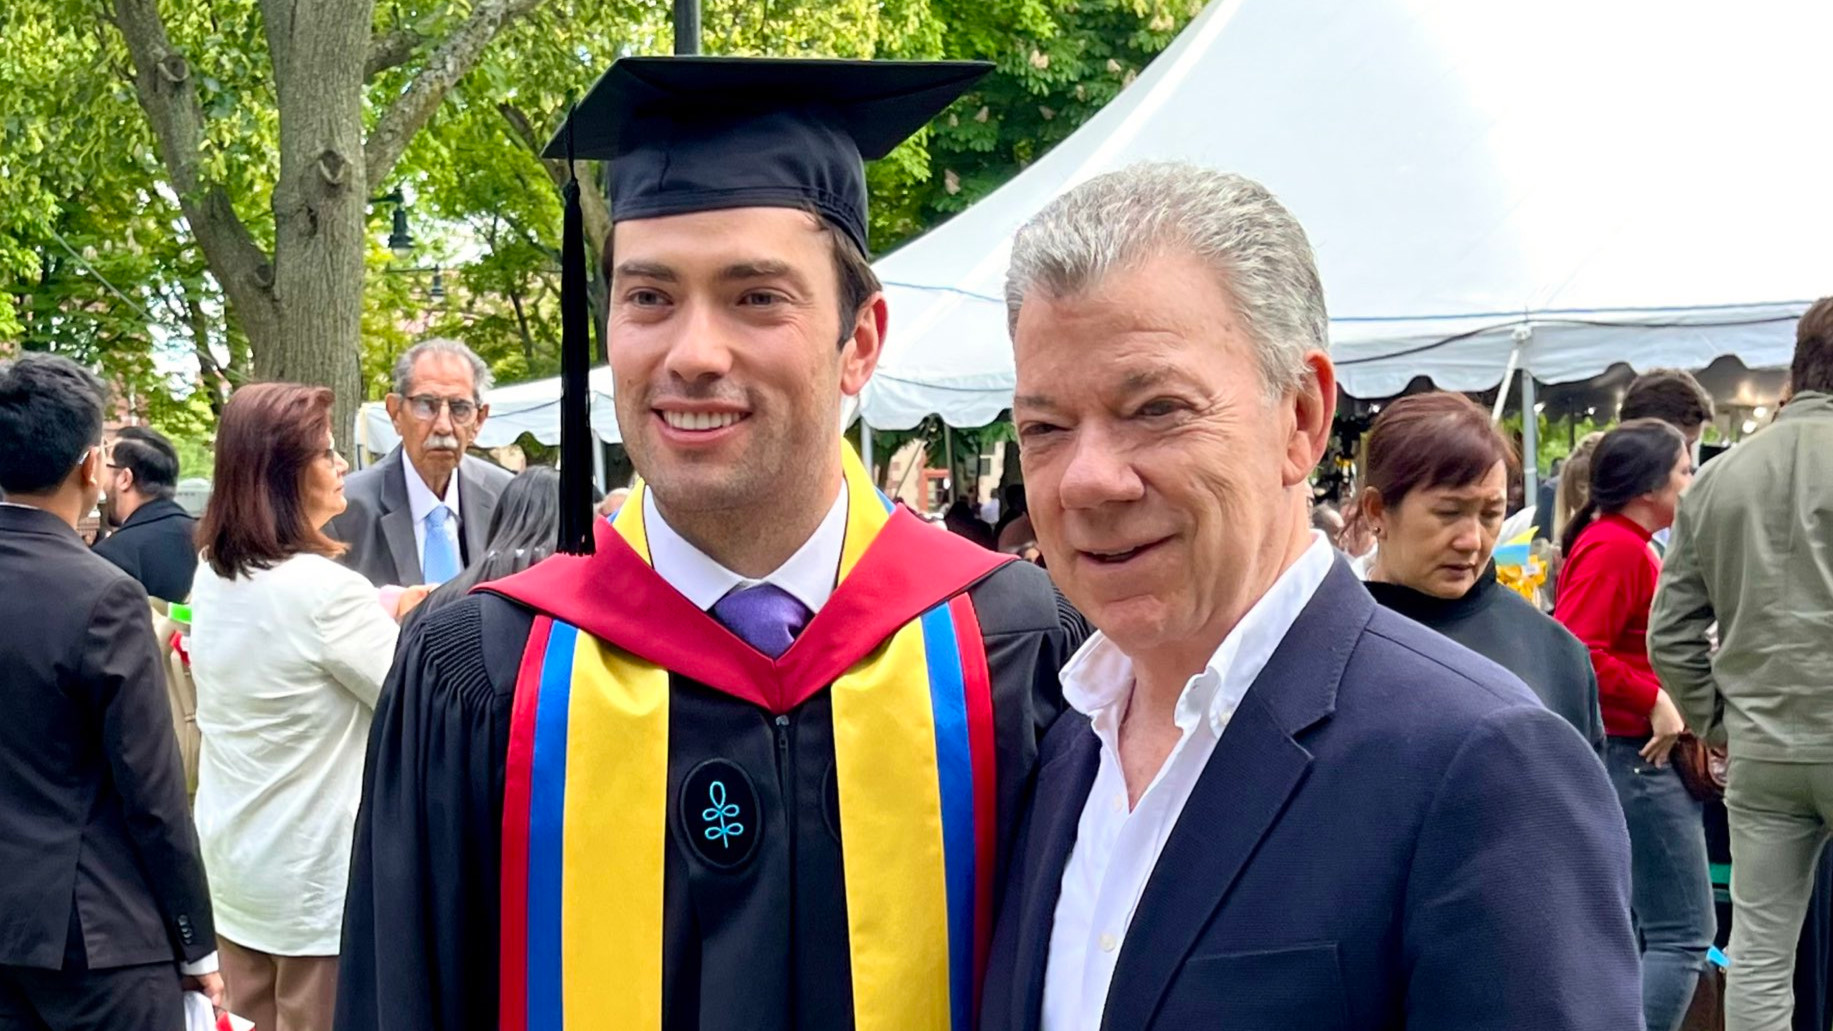 Juan Manuel Santos muy emocionado por el grado de su hijo Esteban en Harvard: “Estamos muy orgullosos”